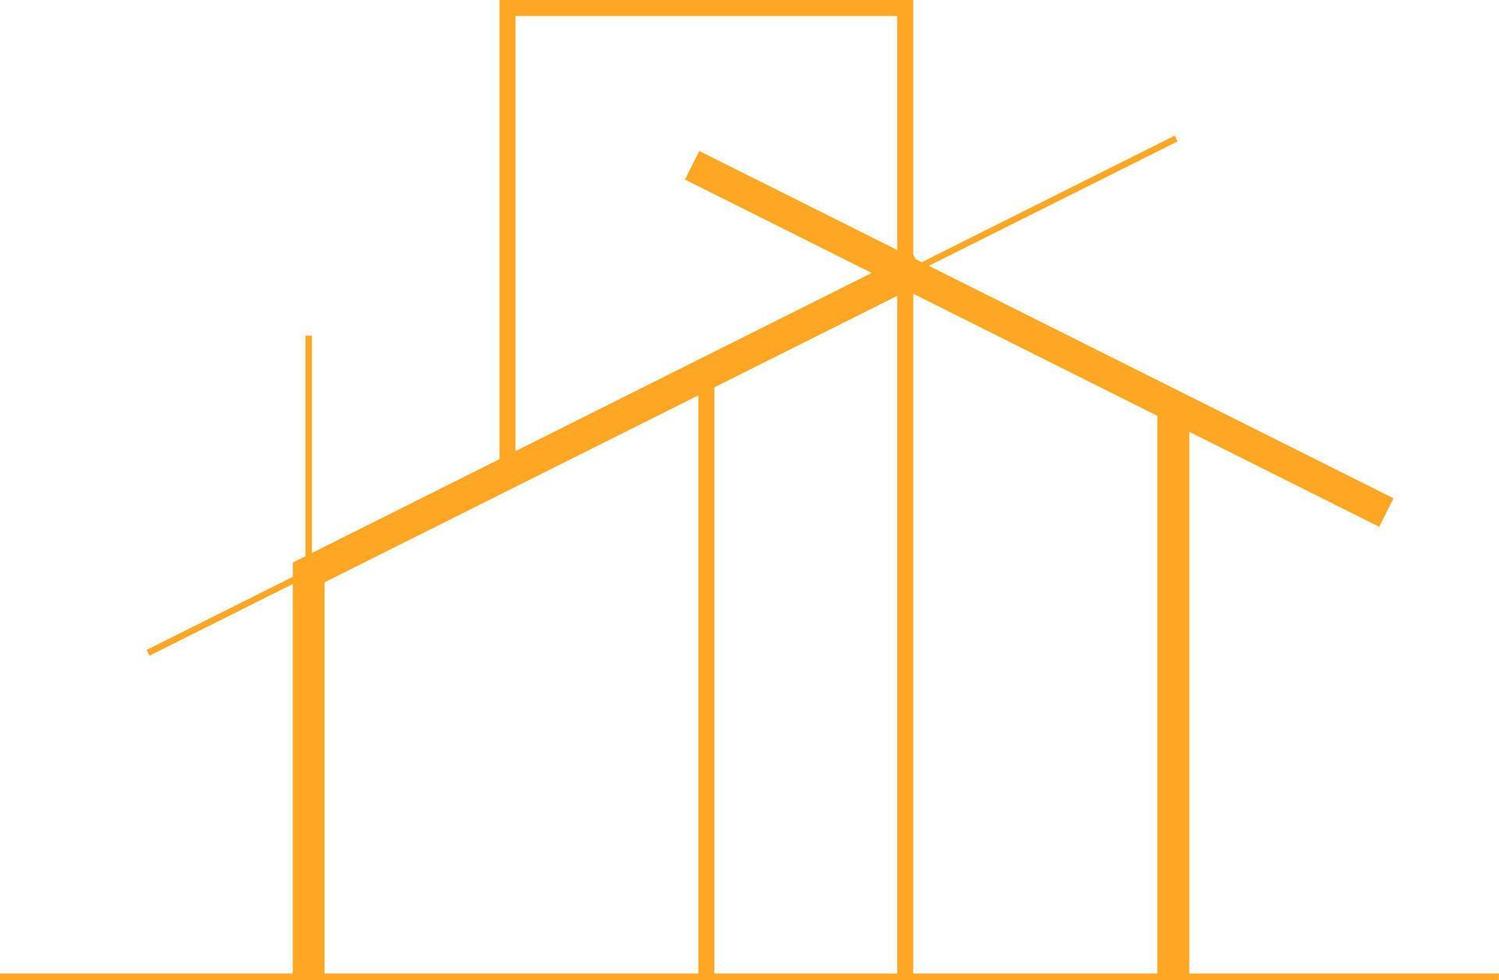 moderno architettura logo schema vettore illustrazione